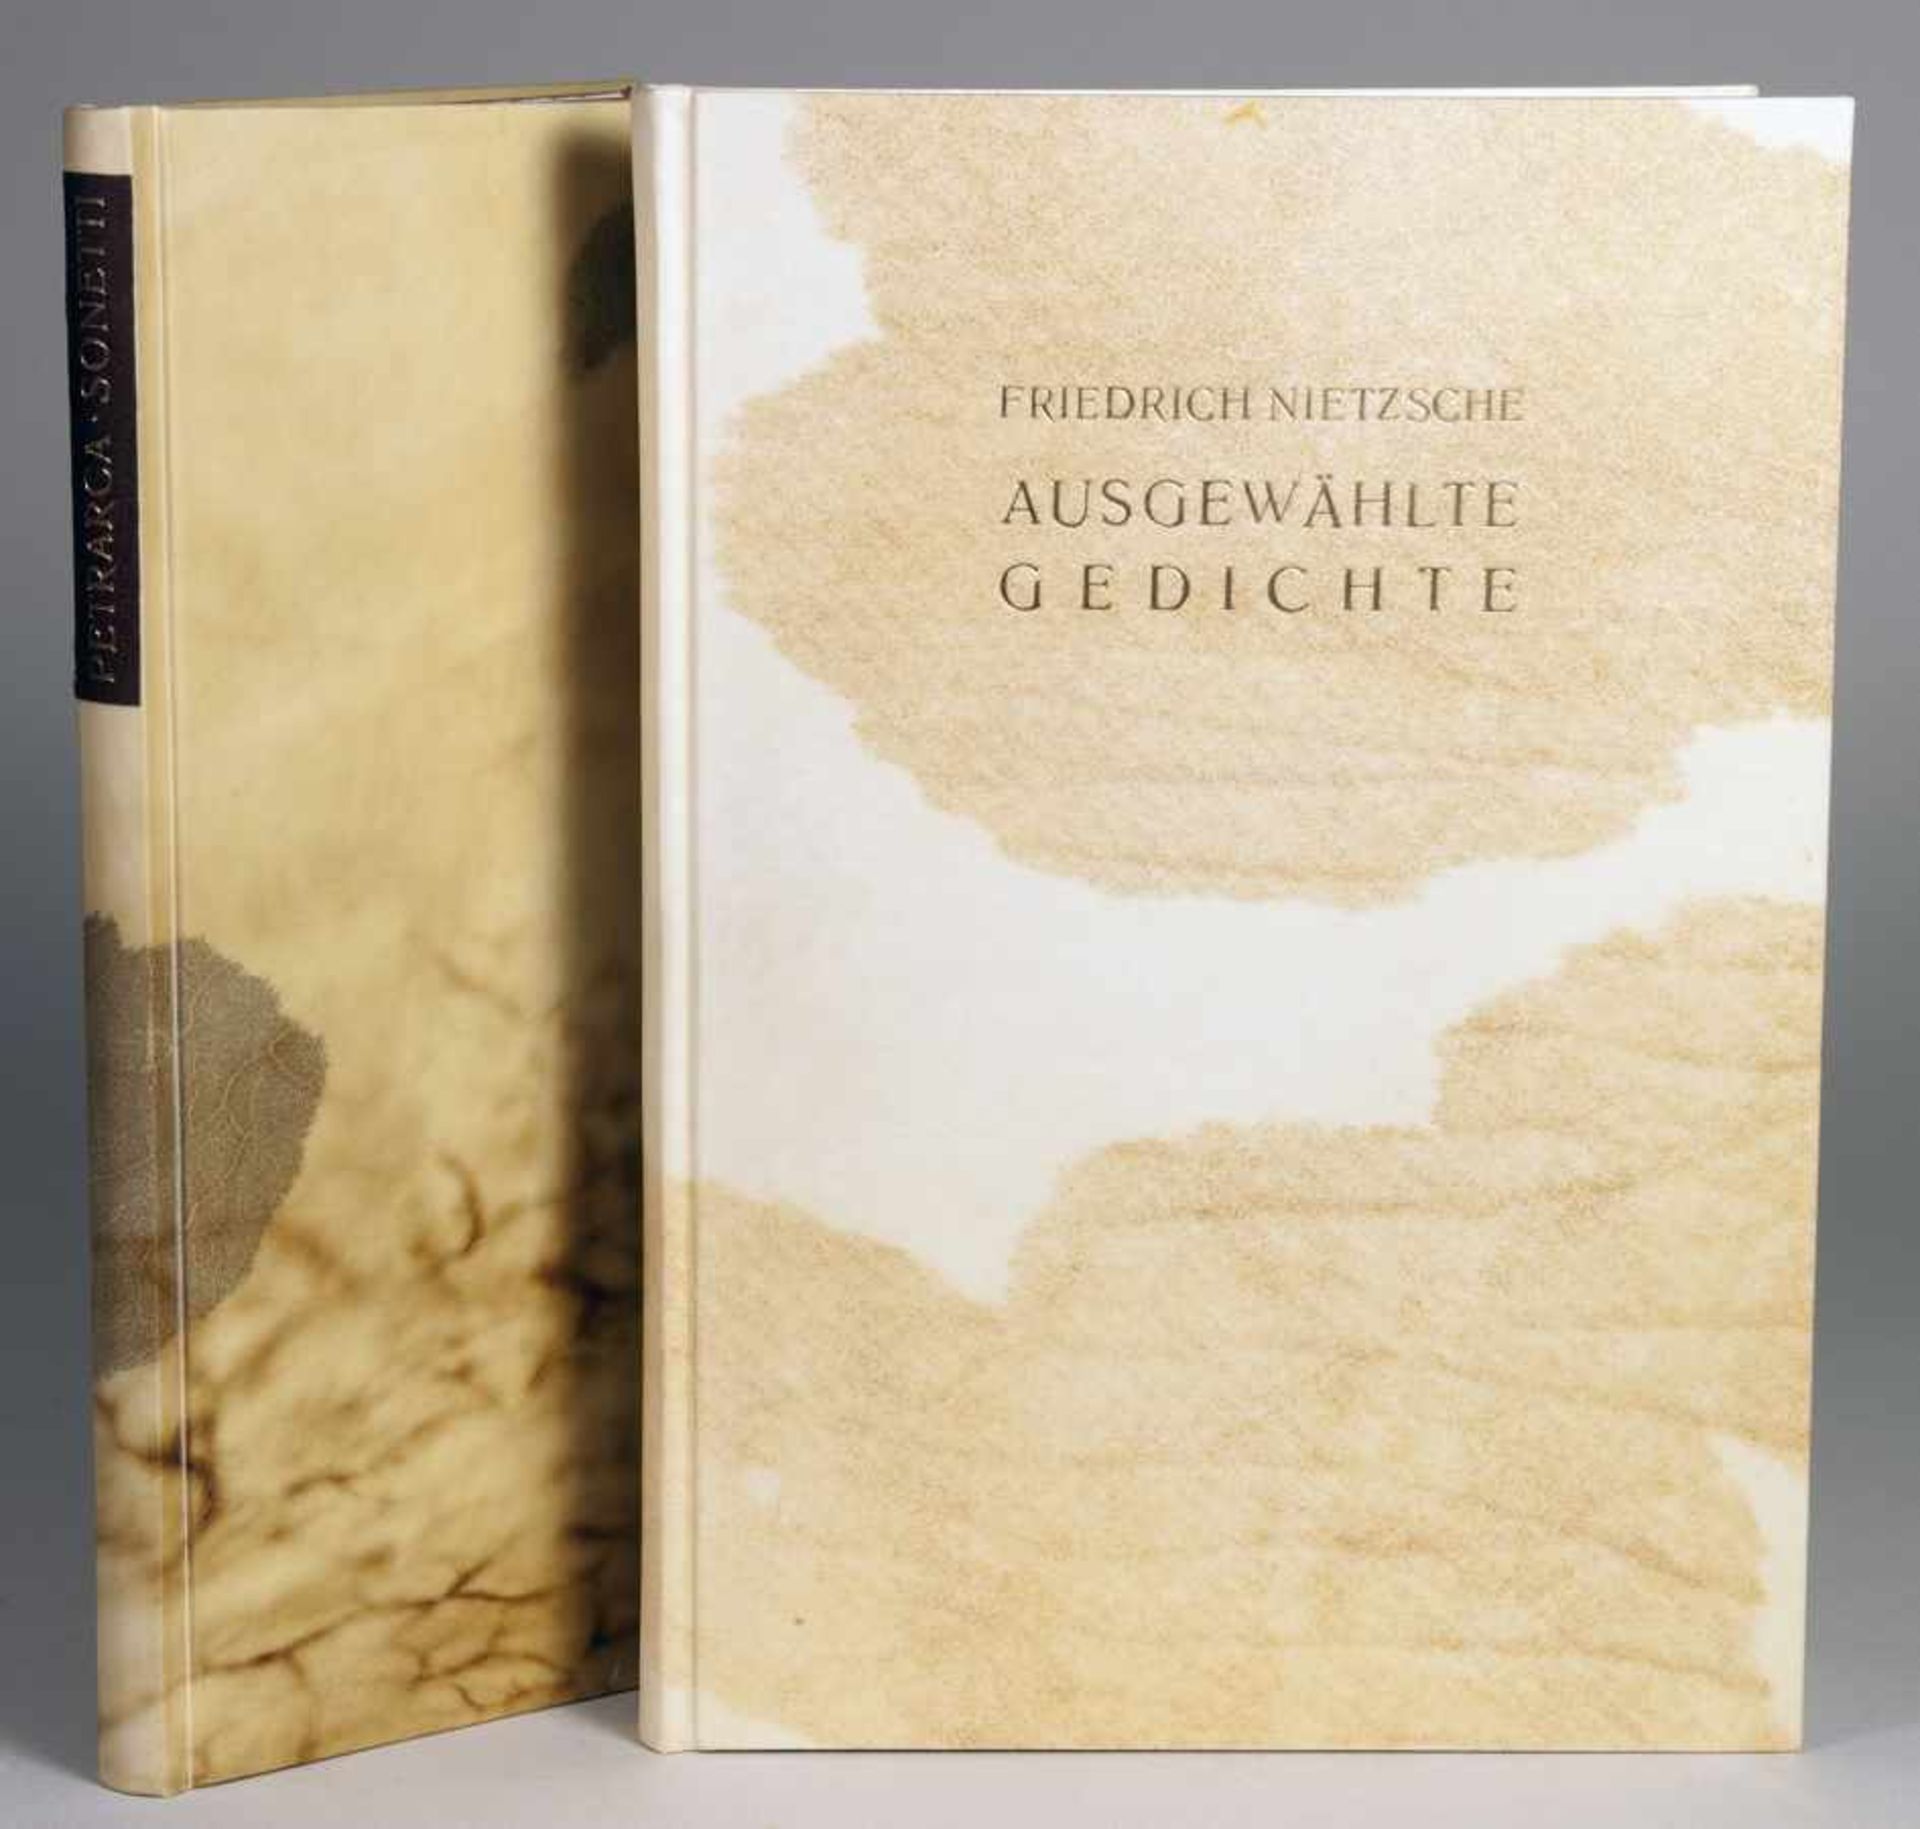 Einbände - Zwei Handeinbände von Gerd Prade. Pergamentbände mit vergoldeten Titeln. I: Friedrich